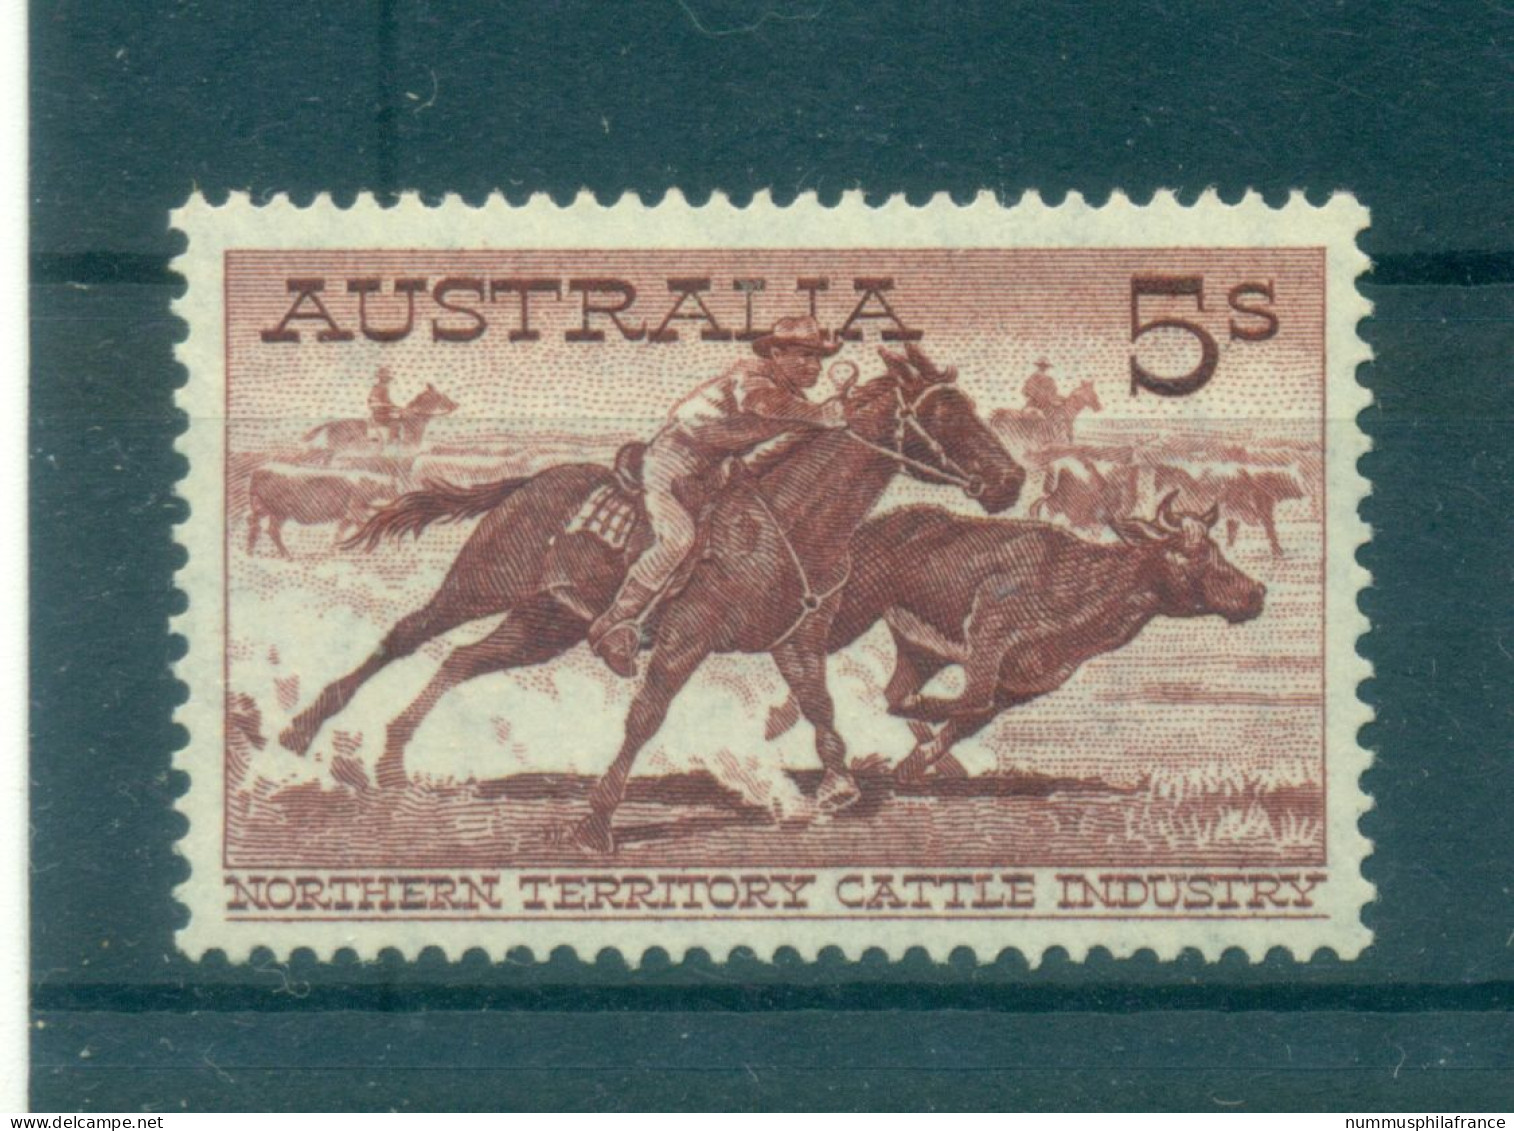 Australie 1961 - Y & T N. 274 - Série Courante (Michel N. 313 A) - Mint Stamps